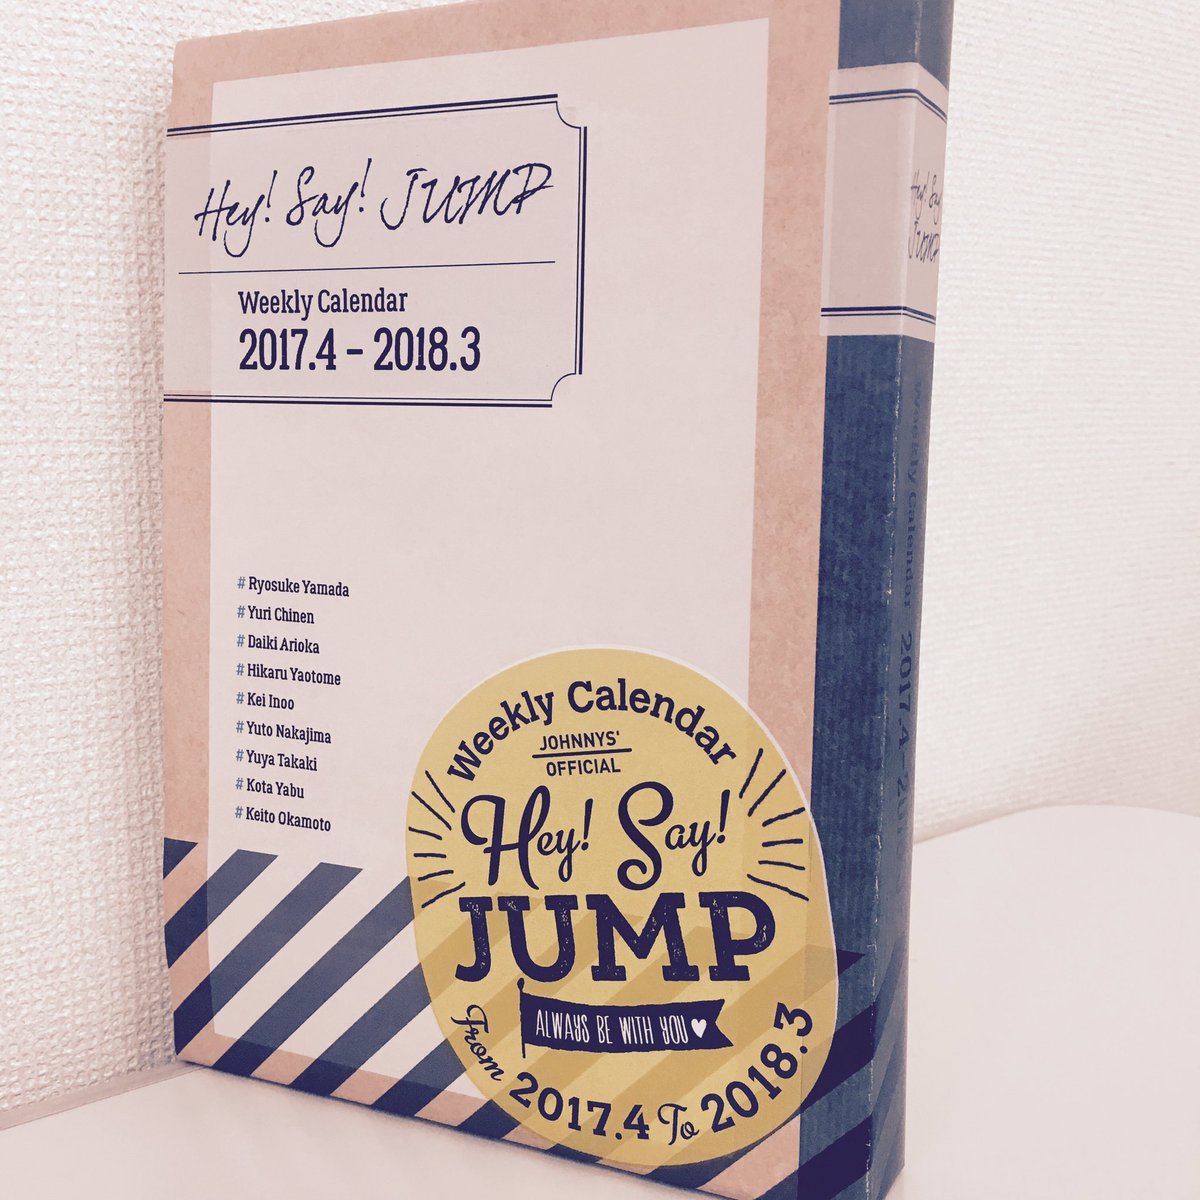 ট ইট র With編集部 News Hey Say Jumpカレンダー 予約受付中 ウィークリーカレンダーのカード収納用boxのデザインを初公開 With2月号で紹介中の先行ビジュアルも要チェック カレンダーのフライヤーはジャニーズカウントダウンライブ Jumpの東京